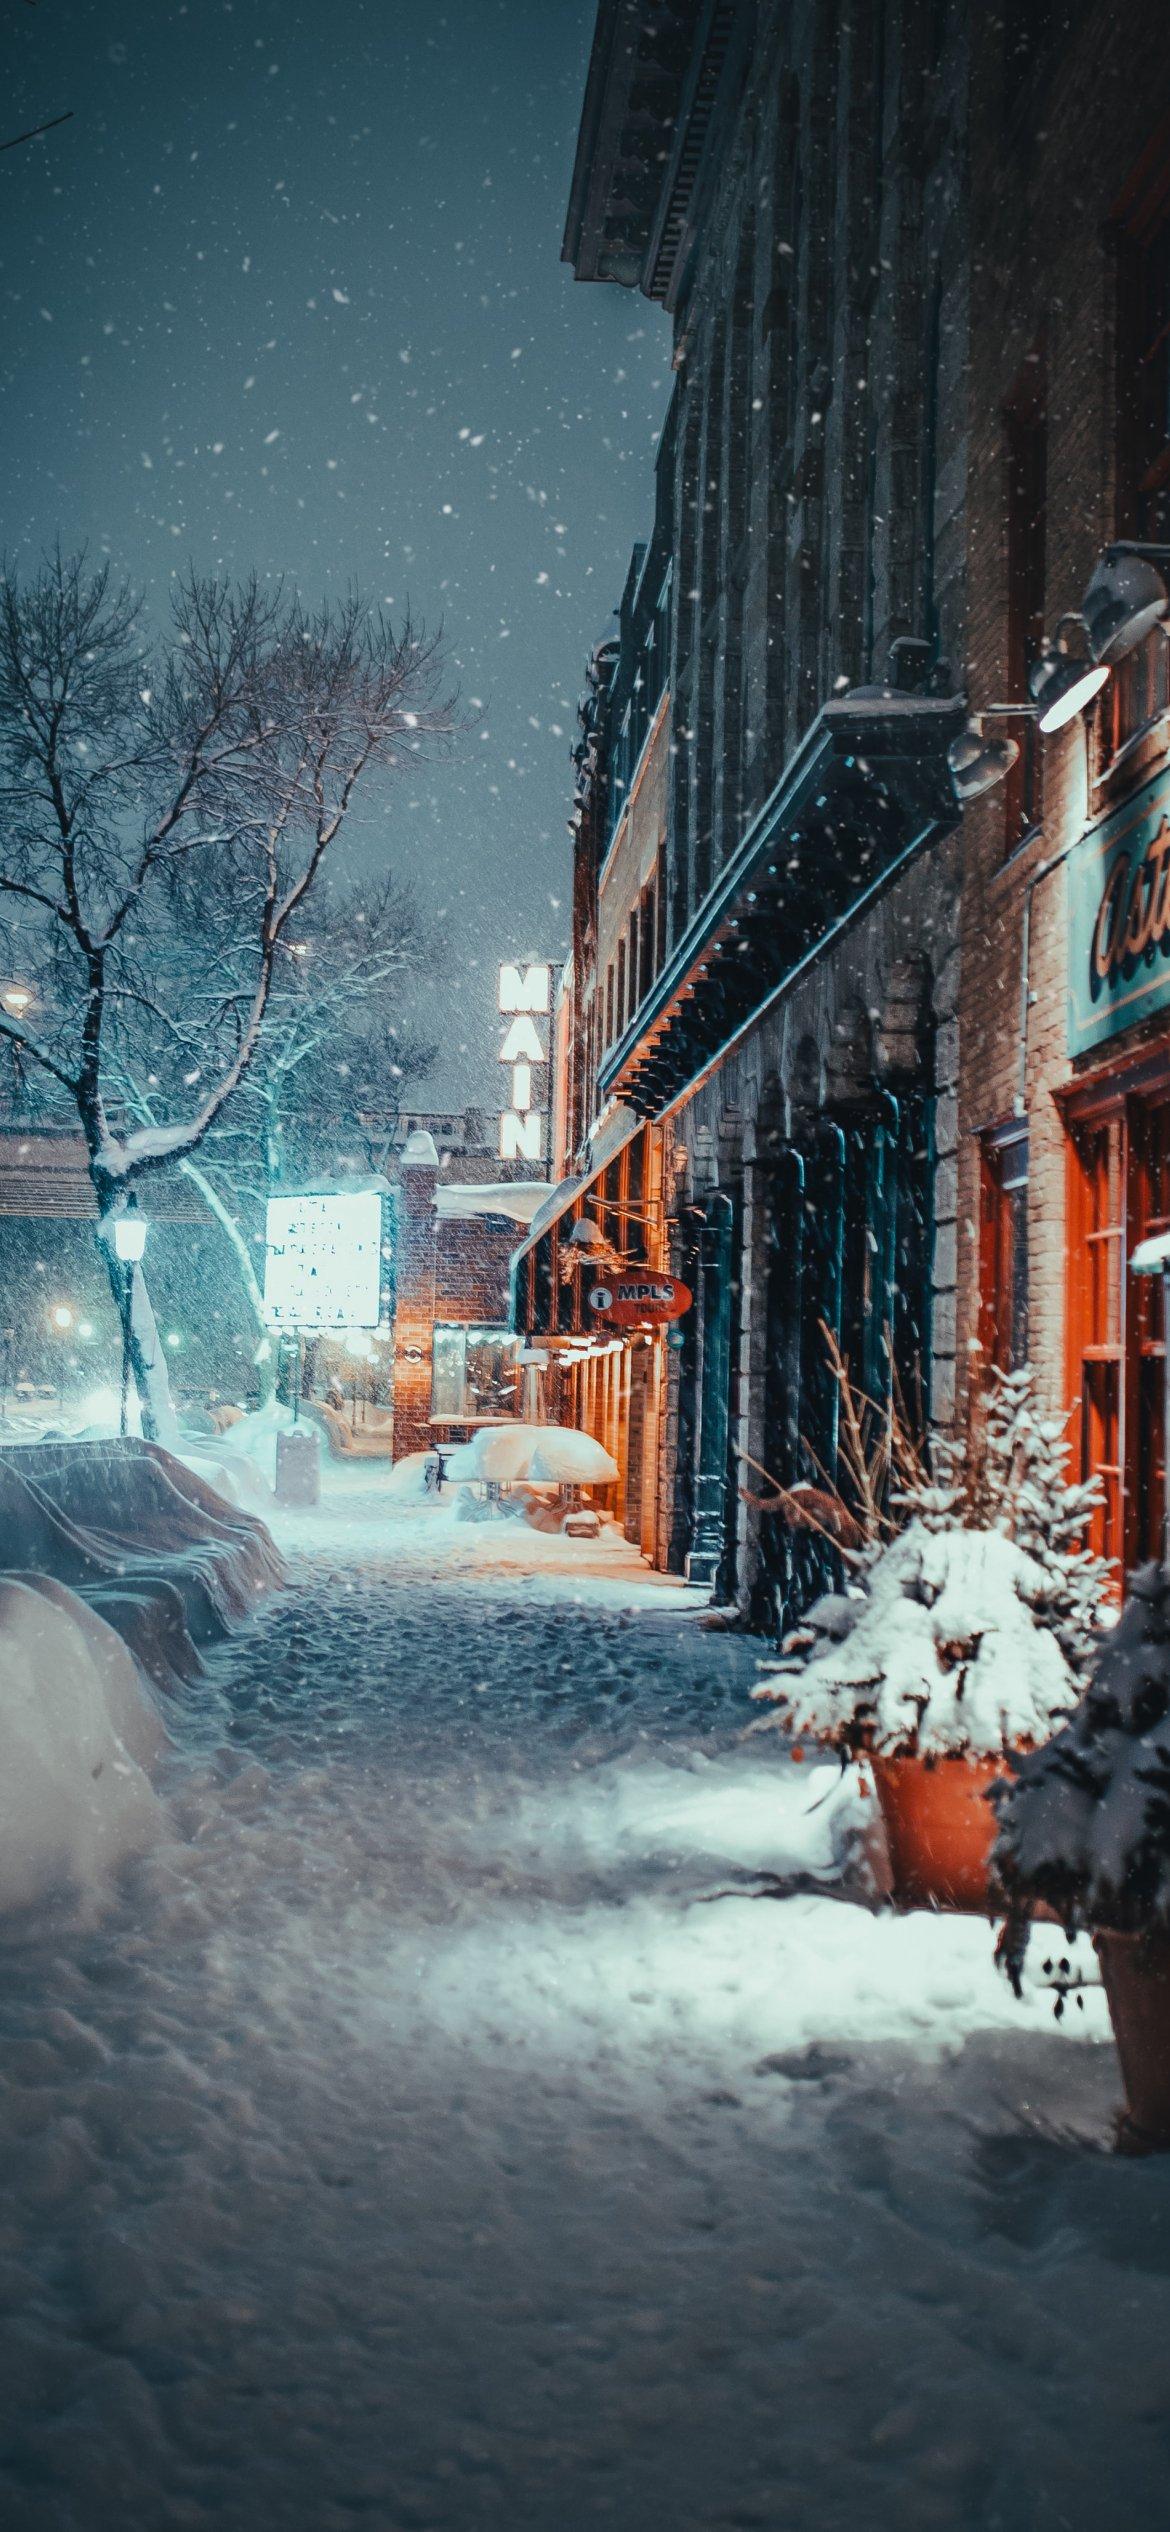 Улица, снегопад, зима Обои 1170x2532 iPhone 13, 13 Pro, 12, 12 Pro